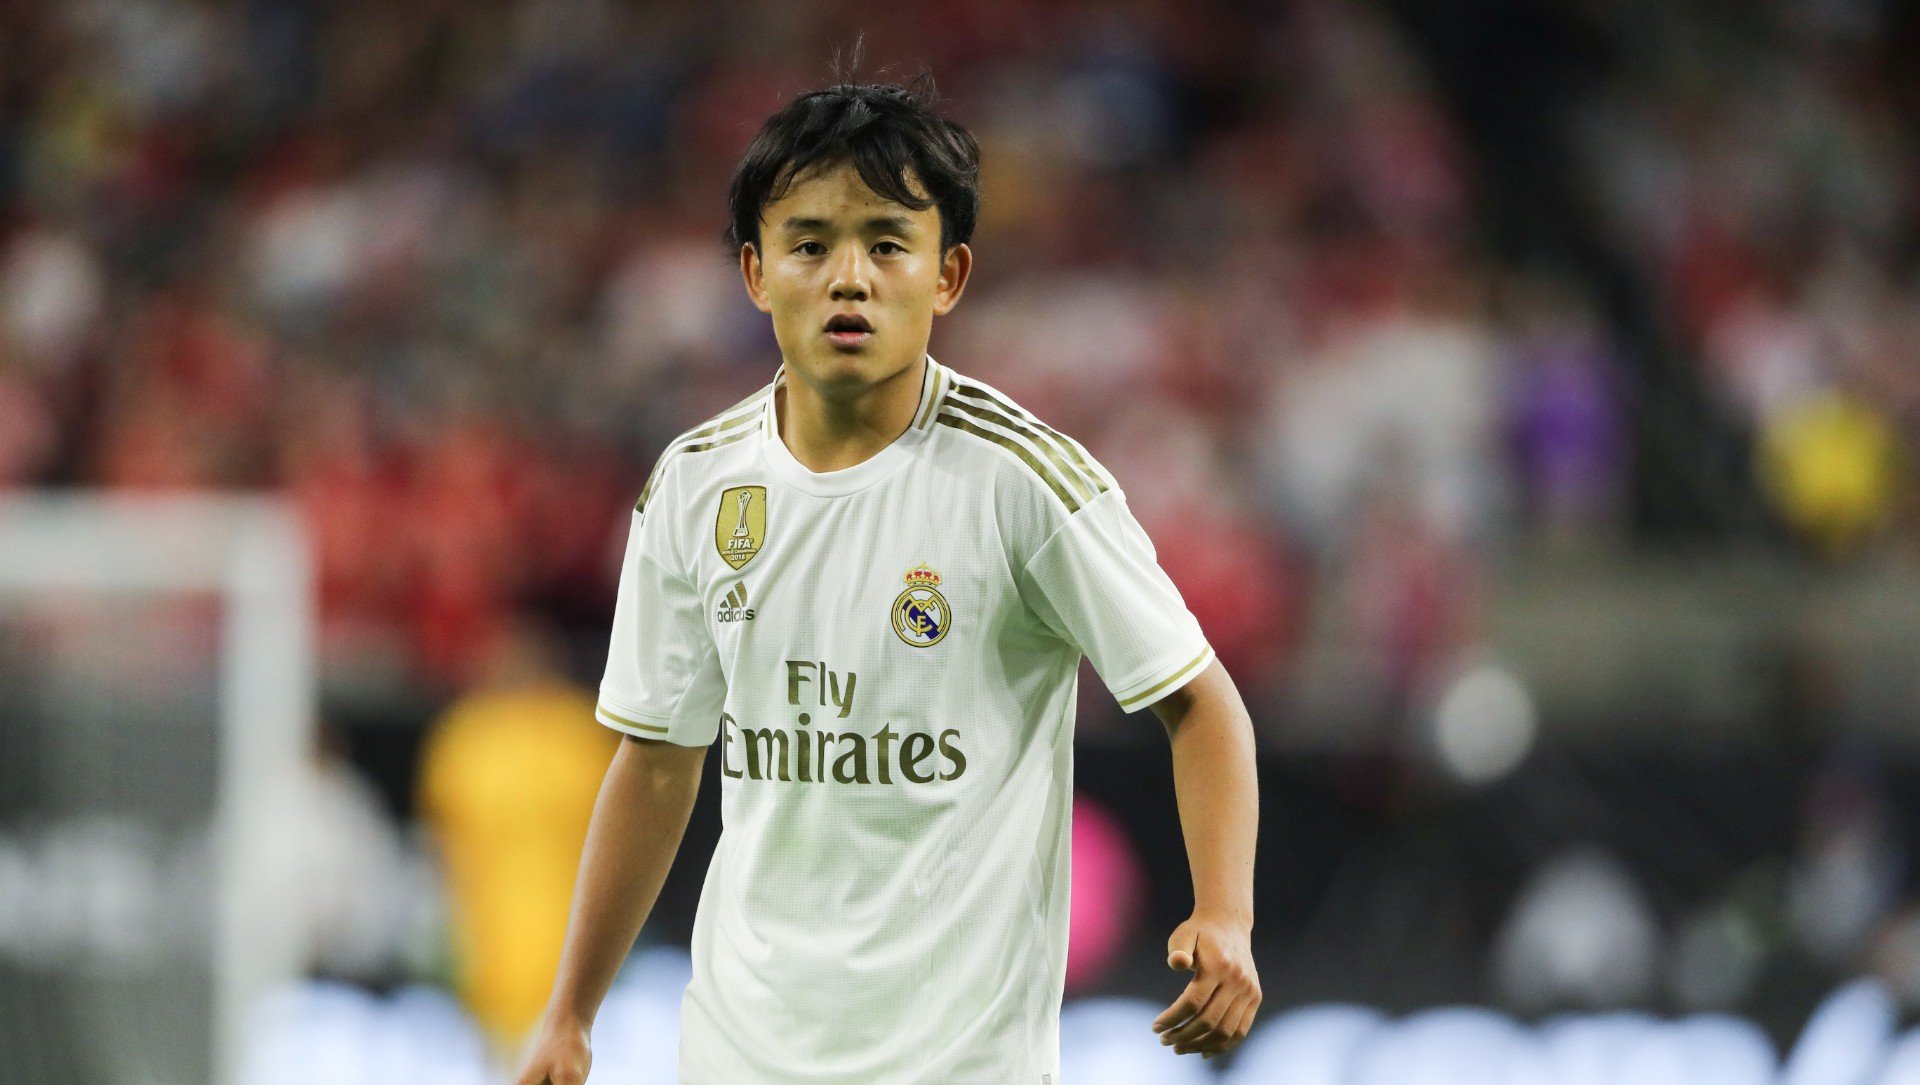 FECHADO – O meio-campista Takefusa Kubo foi anunciado de forma oficial pelo Villarreal nas redes sociais. Ele chega do Real Madrid por empréstimo de um ano.